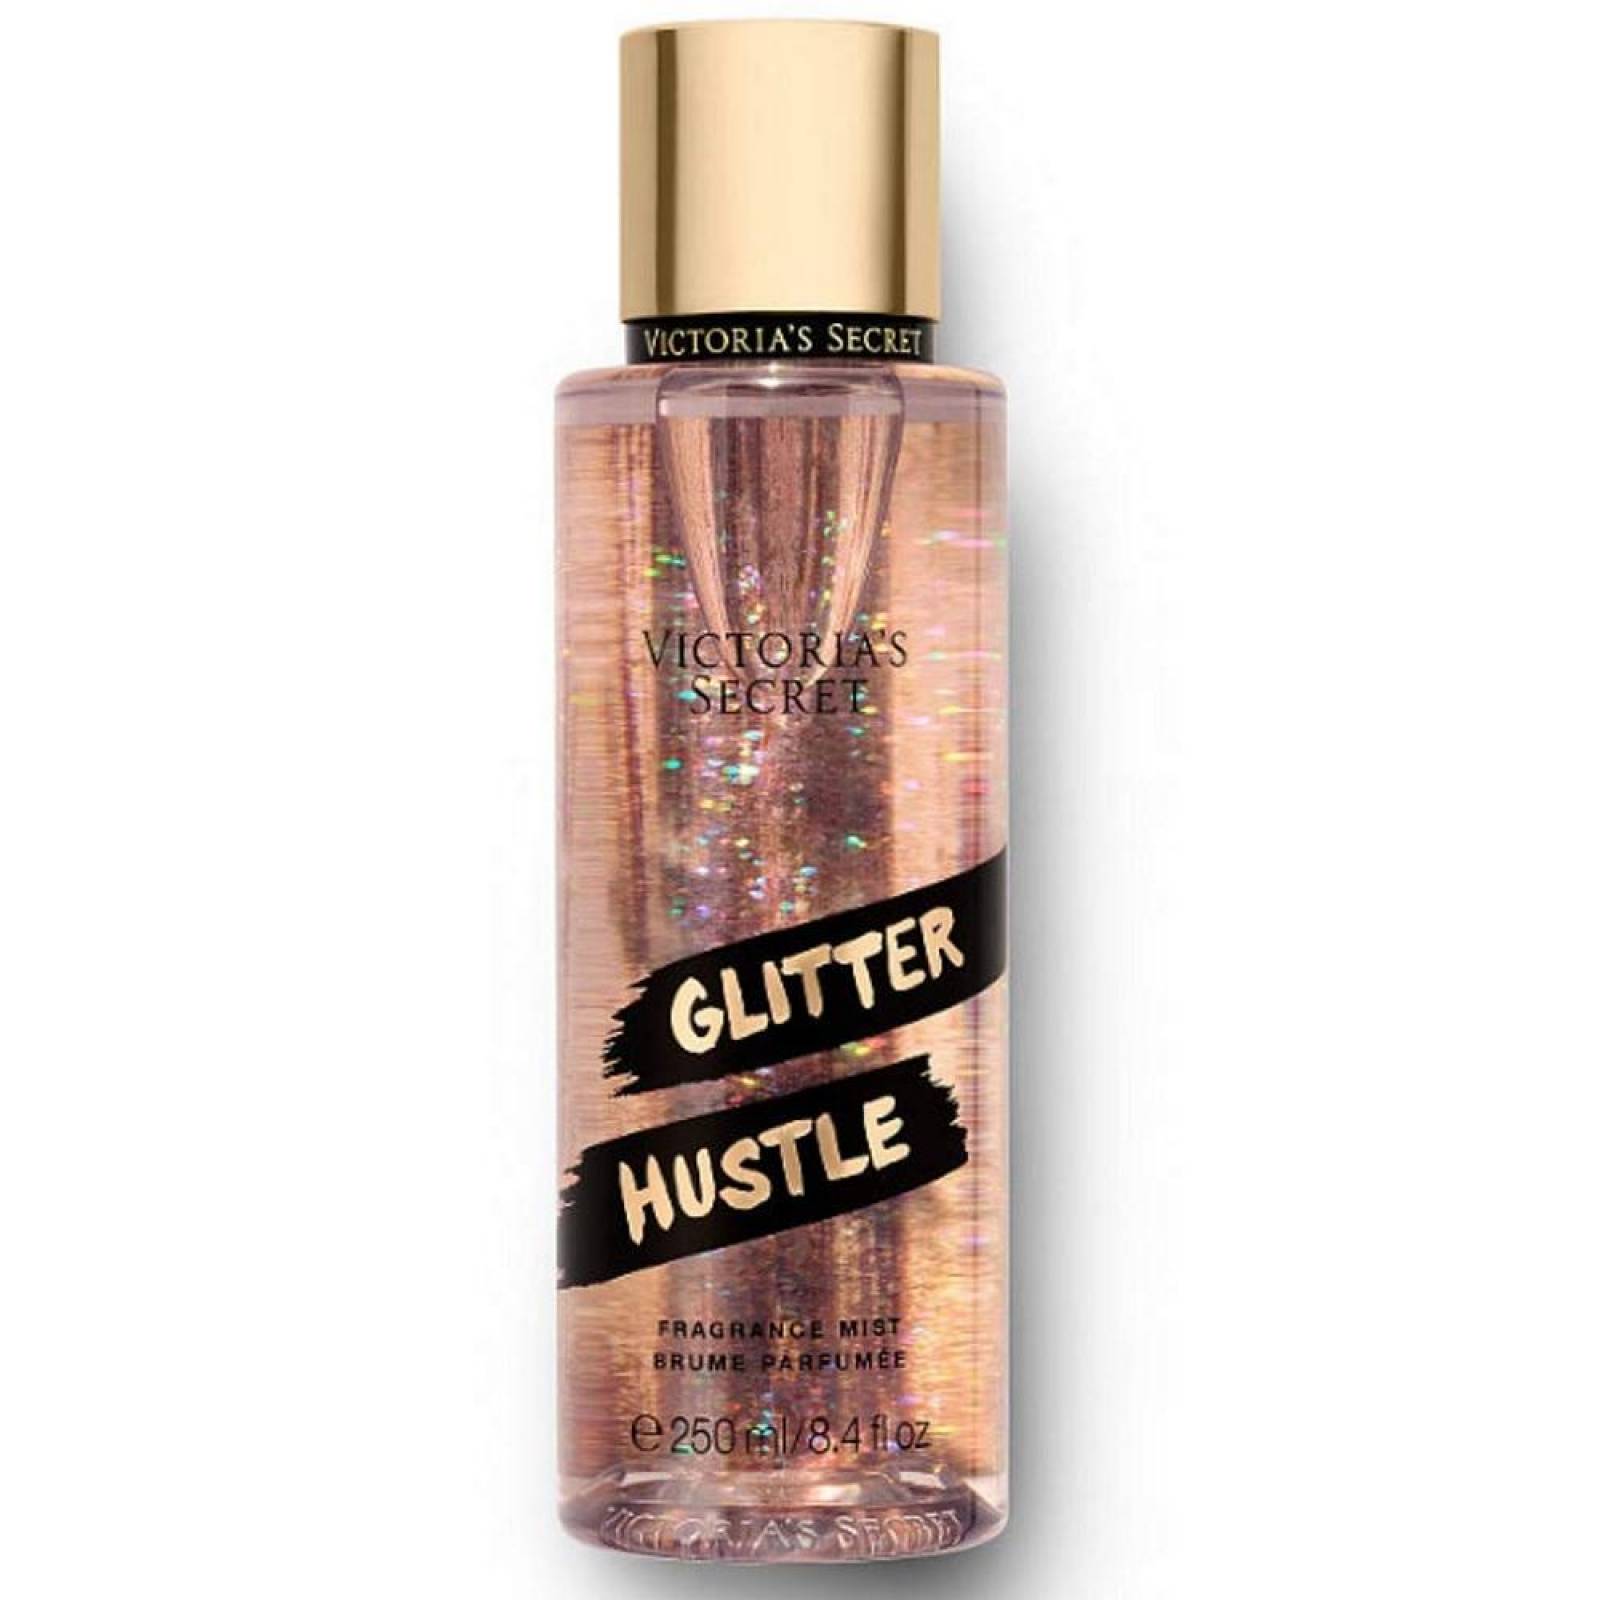 Glitter Hustle Body Mist Victoria Secret 250 ml VS